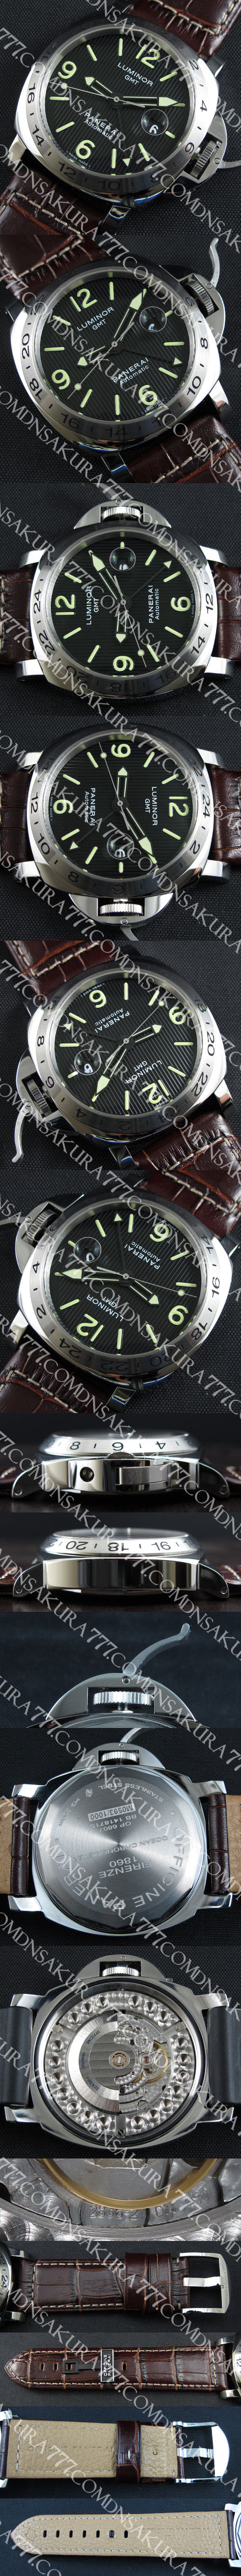 パネライ ルミノール GMT PAM00029スーパーコピー時計